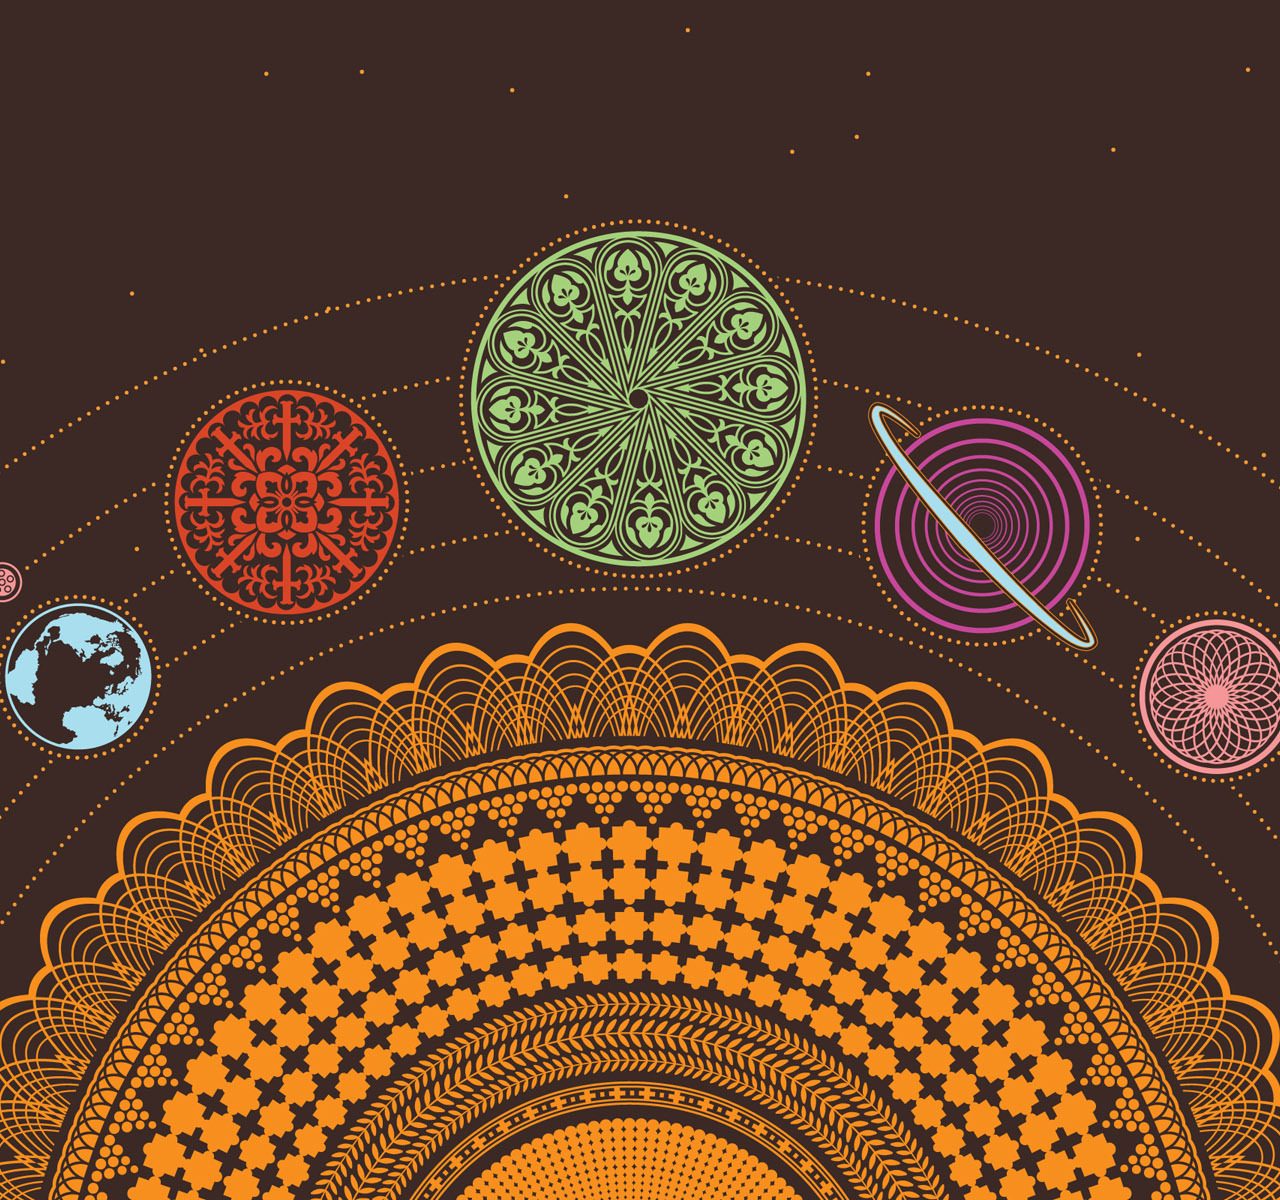 Solar System Art - HD Wallpaper 